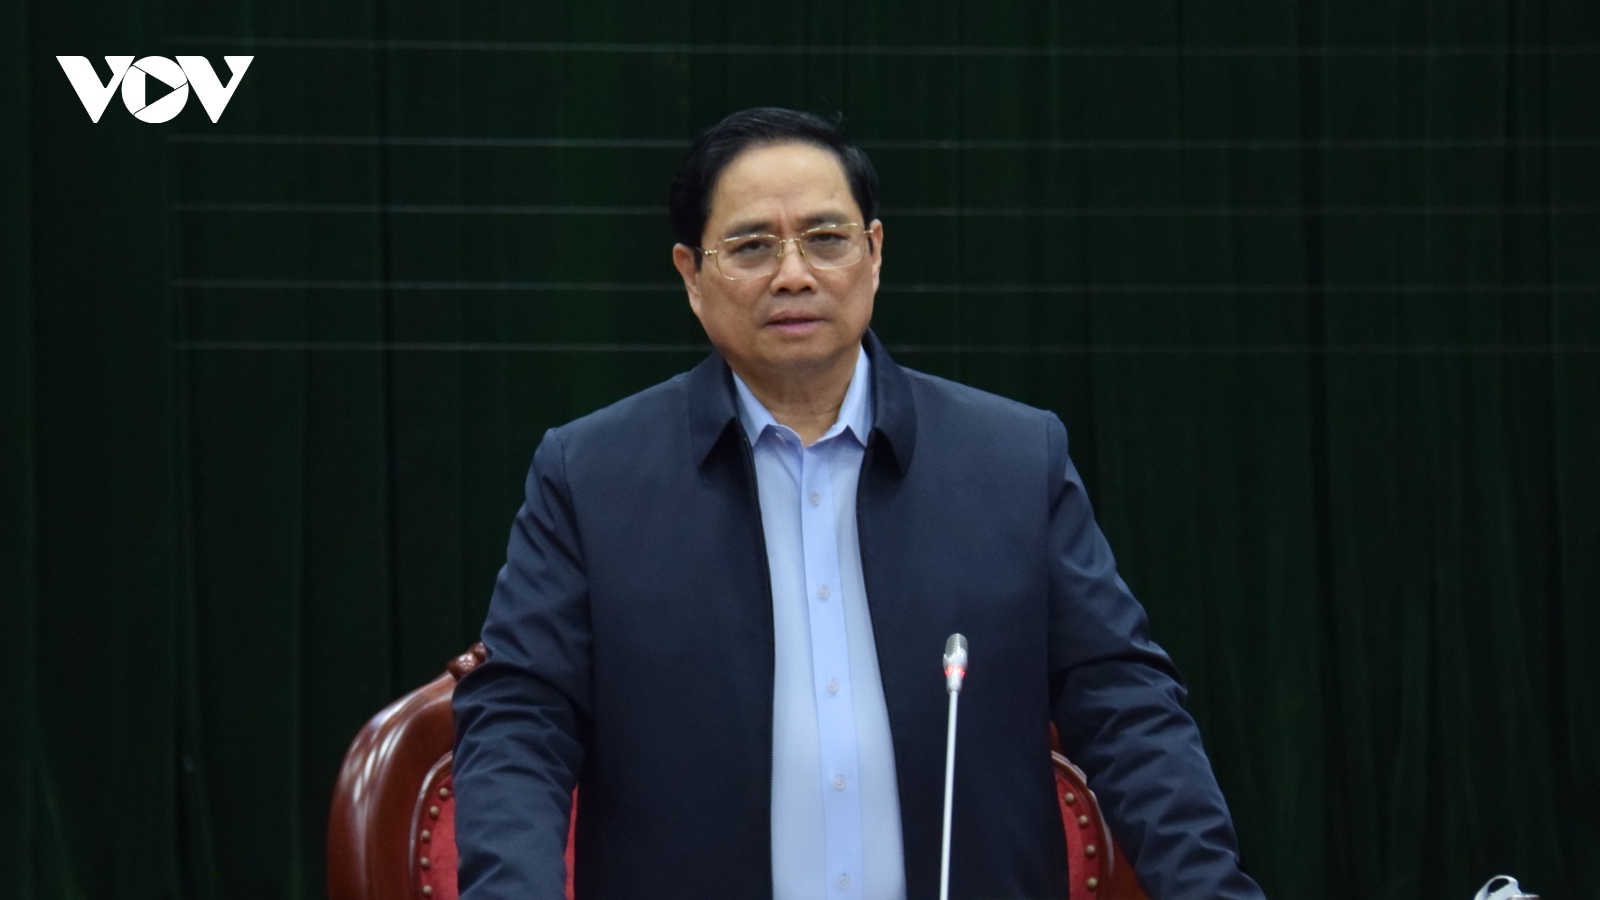 Thủ tướng làm việc với lãnh đạo chủ chốt tỉnh Quảng Bình